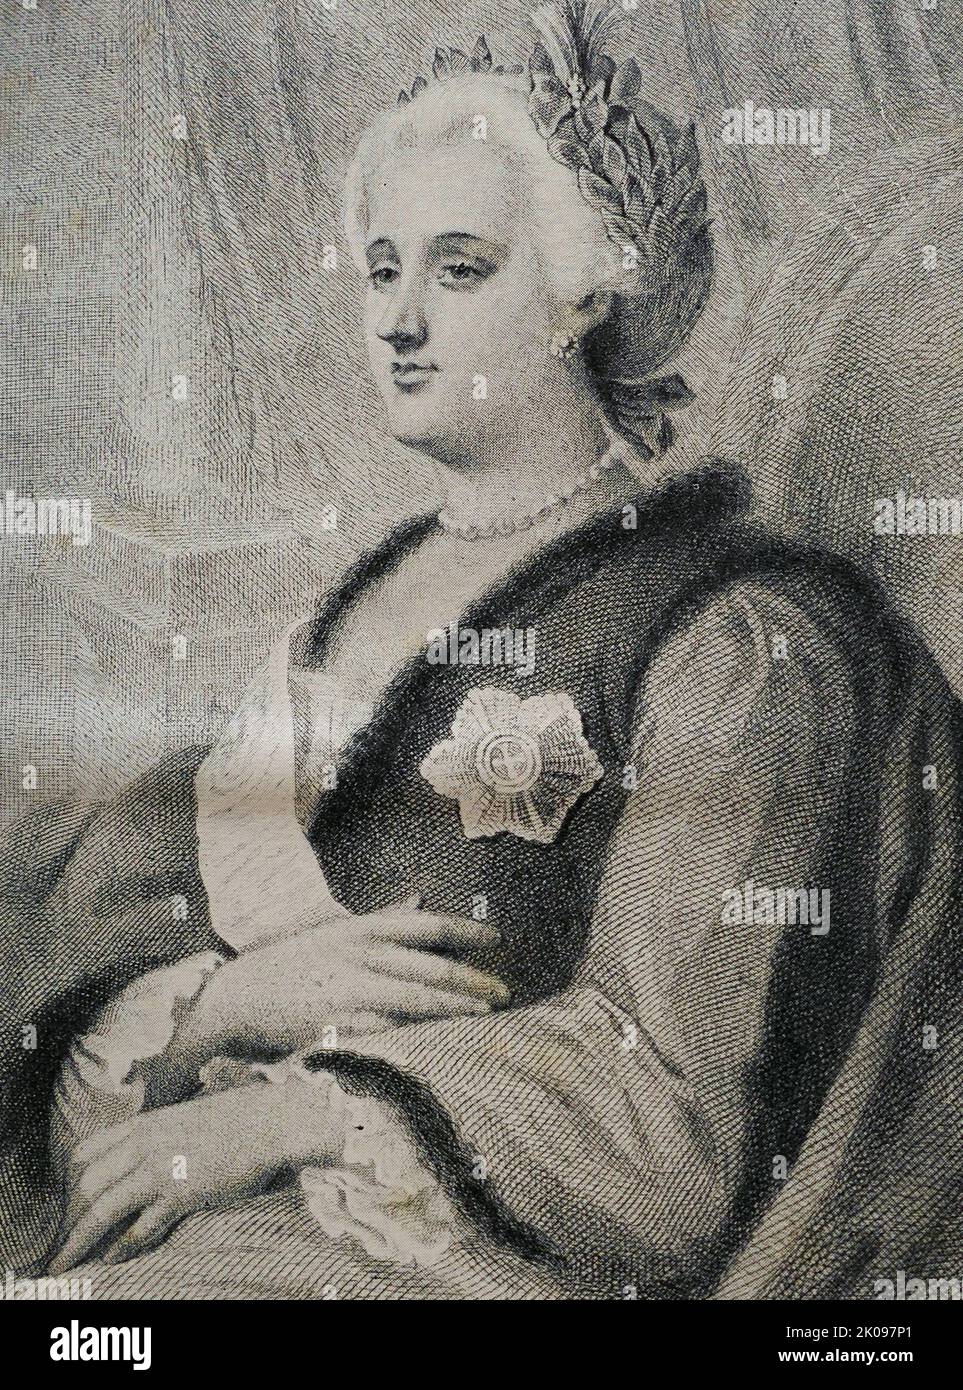 Katharina II. (Geb. Sophie von Anhalt-Zerbst; 2. Mai 1729 - 17. November 1796), am häufigsten als Katharina die große bekannt, war von 1762 bis 1796 die letzte regierende Kaiserin Russlands - die am längsten herrschende weibliche Führerin des Landes. Sie kam an die Macht nach der Tötung ihres Mannes und zweiten Cousins, Peter III. Unter ihrer Herrschaft wurde Russland größer, seine Kultur wurde neu belebt und als eine der großen Mächte Europas anerkannt. Stockfoto